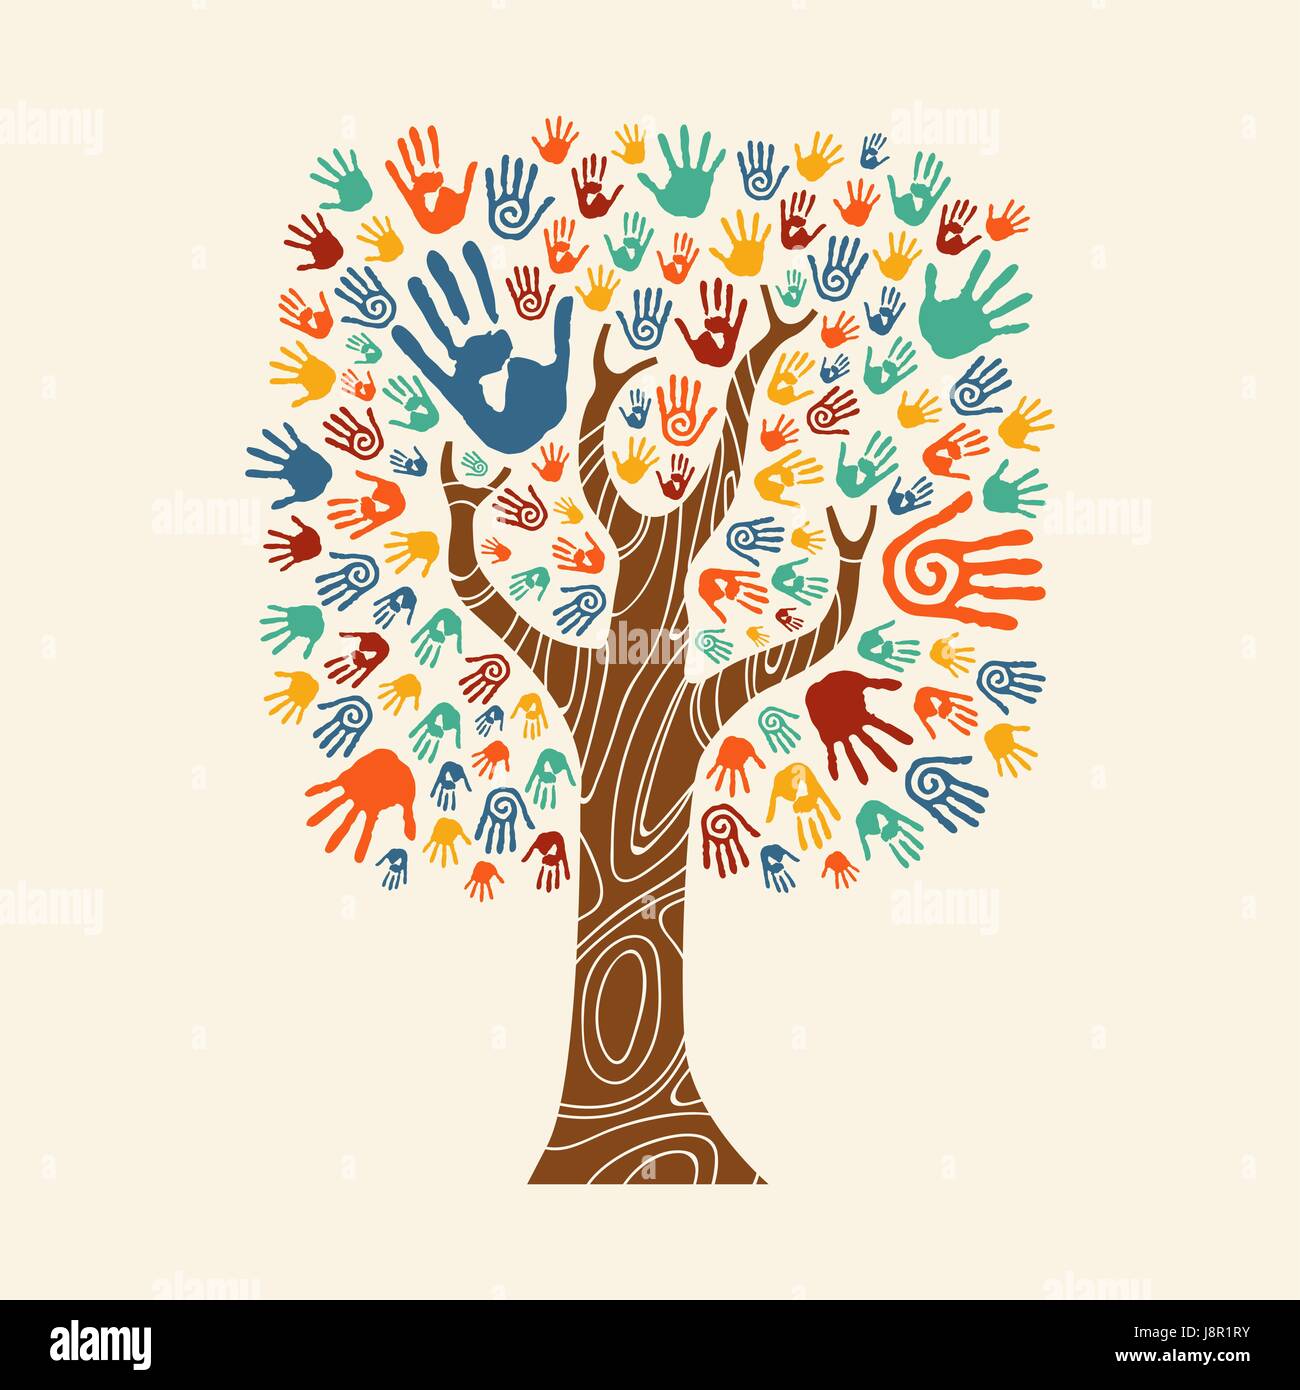 Concept arborescence constituée de colorful hand print art. divers concept communautaire d'aide sociale, le travail d'équipe ou d'un organisme de bienfaisance. Vecteur EPS10. Illustration de Vecteur